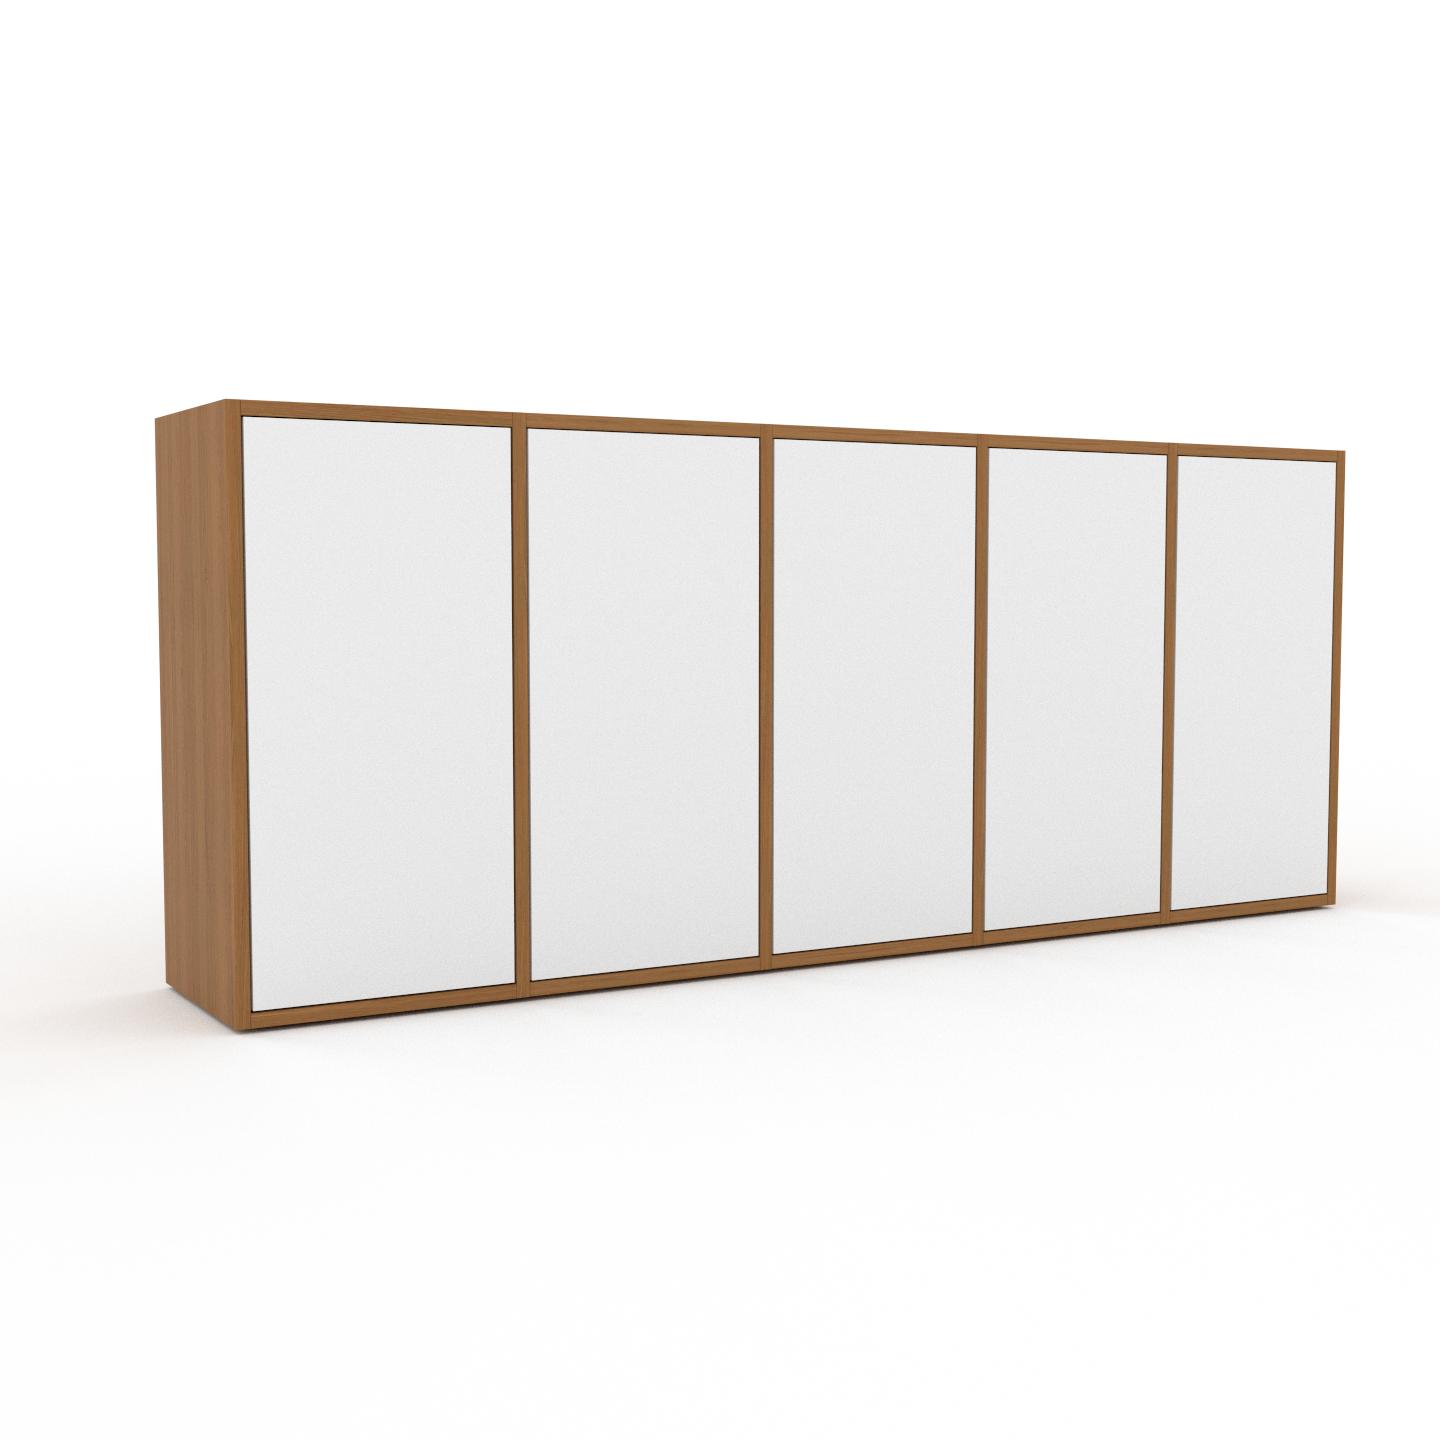 MYCS Bücherregal Weiß - Modernes Regal für Bücher: Türen in Weiß - 195 x 80 x 35 cm, Individuell konfigurierbar